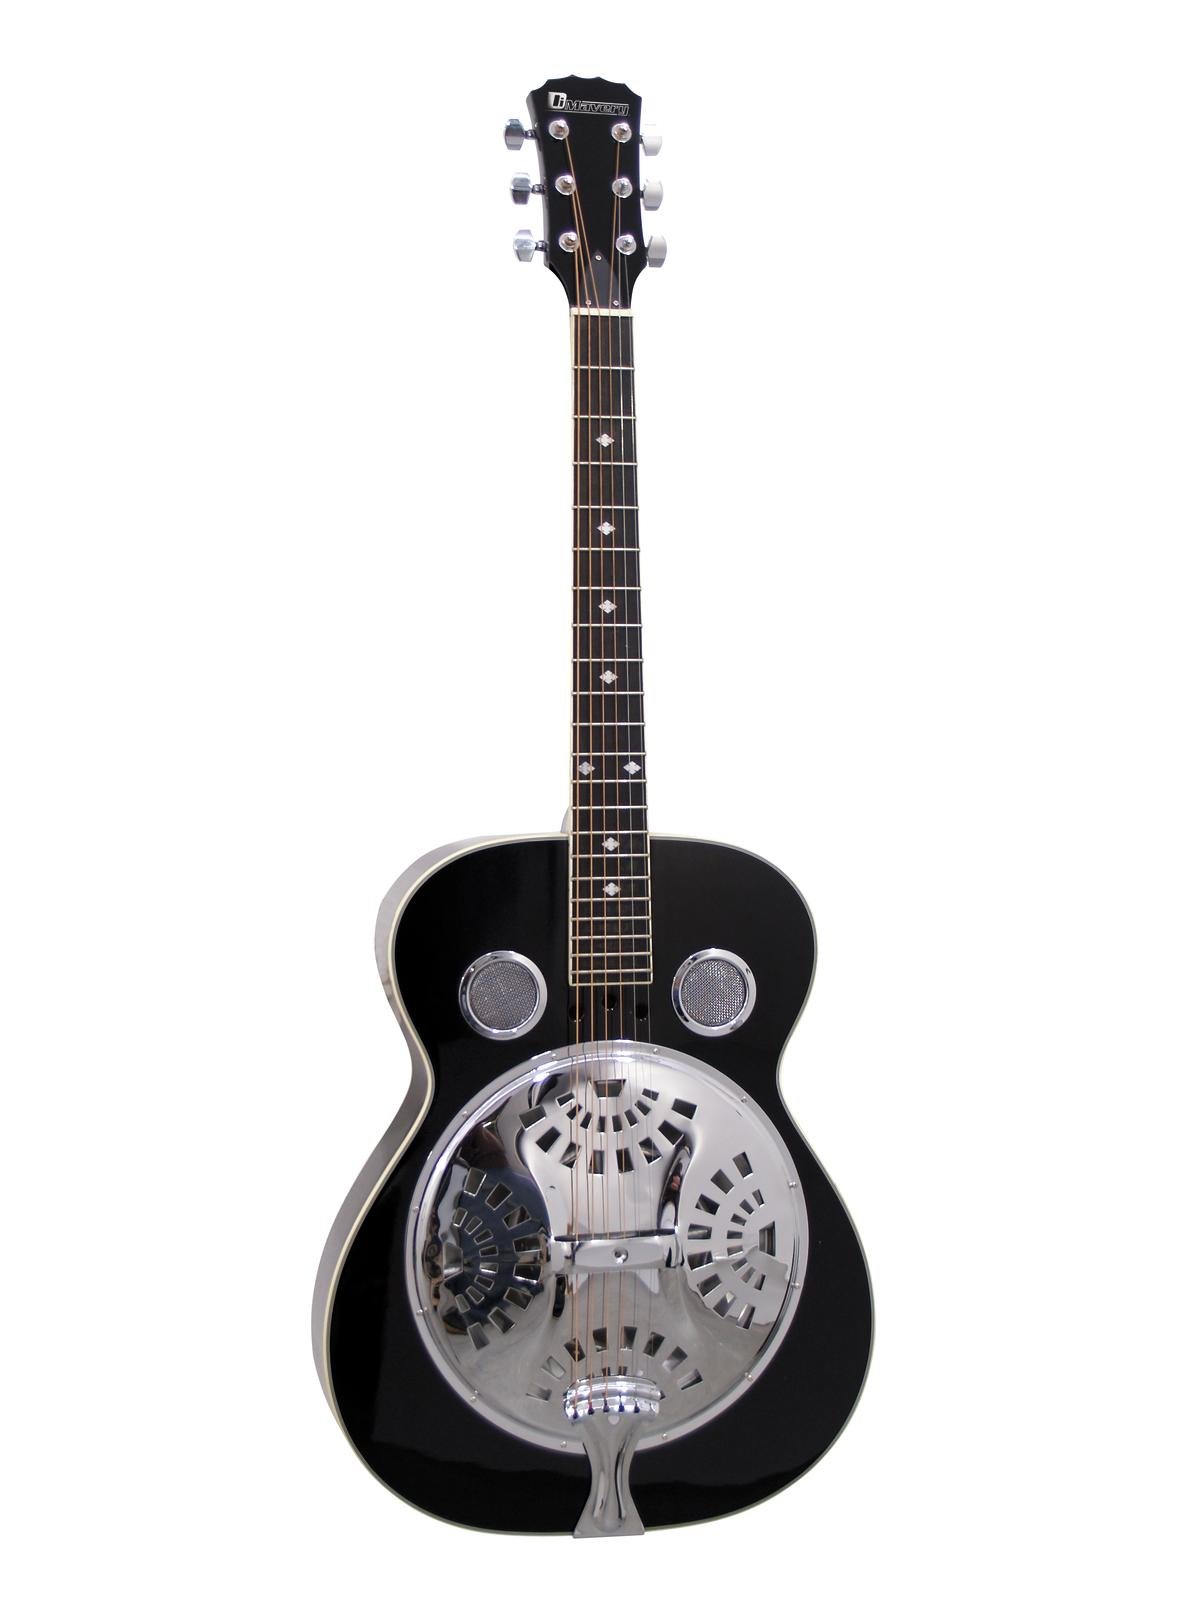 Dimavery RS-300 Rezofonická kytara, černá